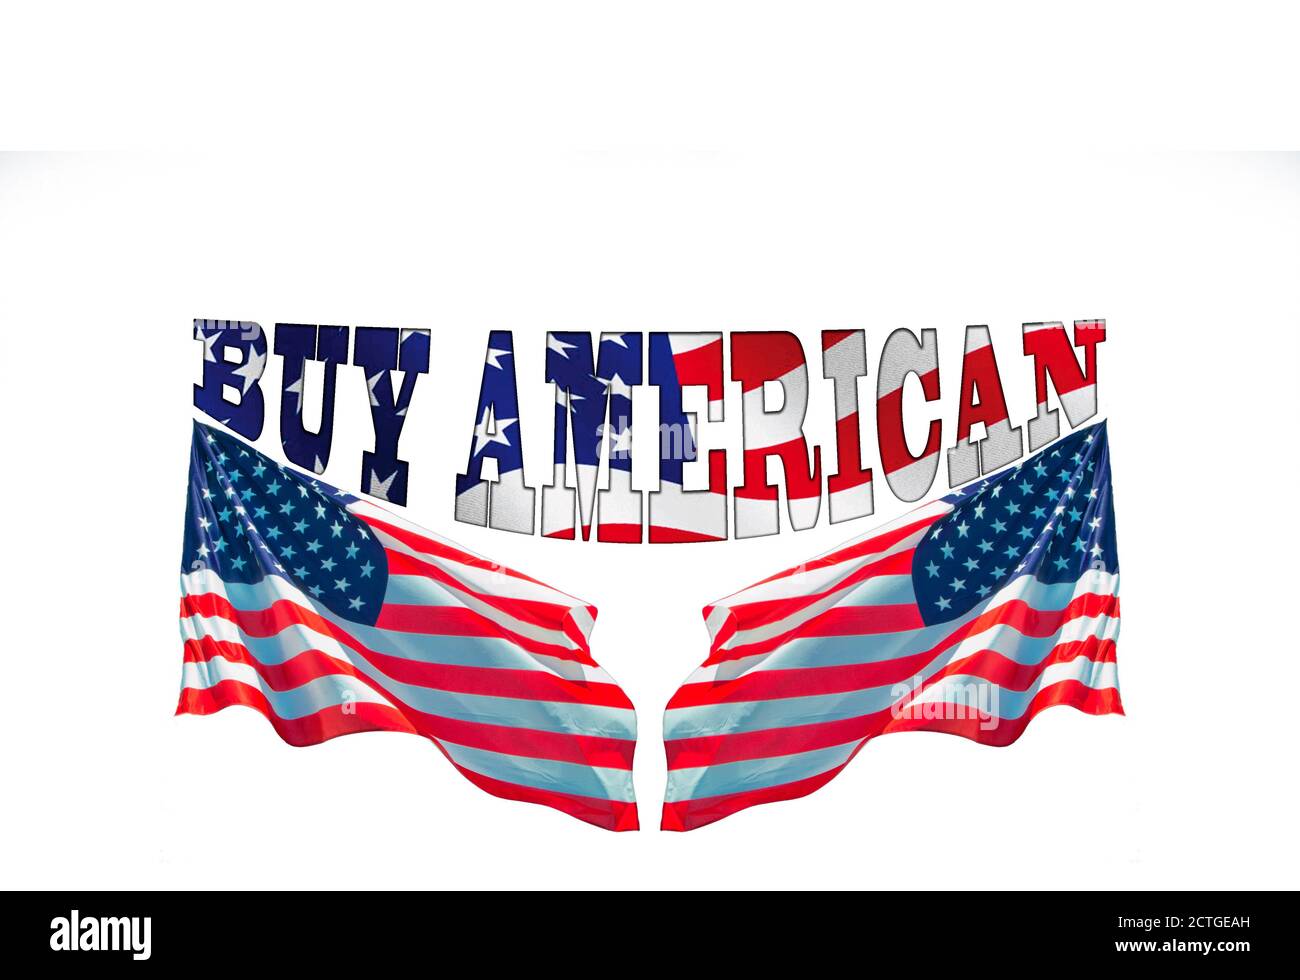 Acheter des mots américains avec deux drapeaux américains, concept pour acheter des produits américains Banque D'Images